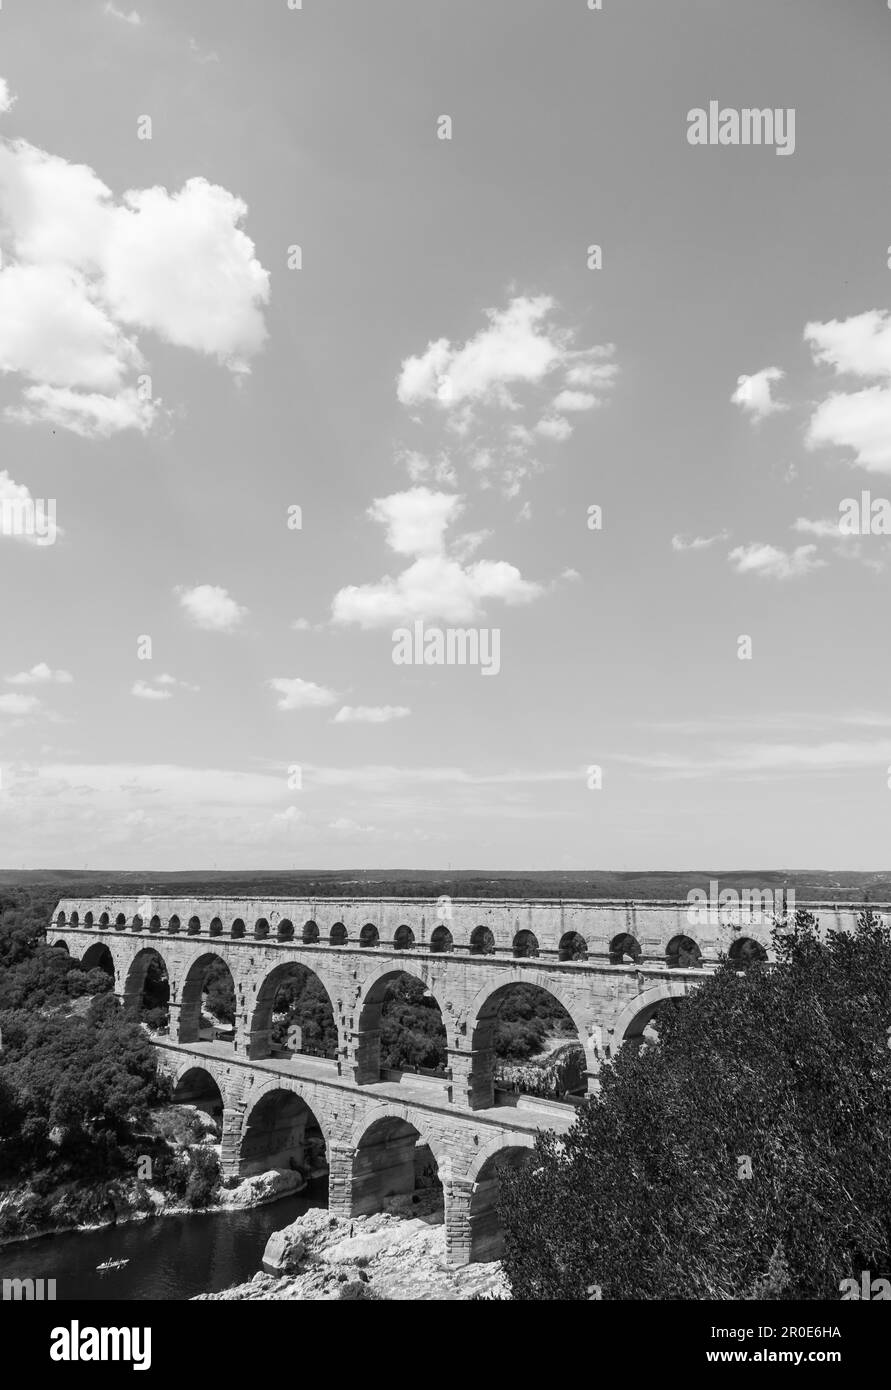 Les architectes romains et les ingénieurs hydrauliques qui ont conçu ce pont ont créé un chef-d'œuvre technique et artistique Banque D'Images